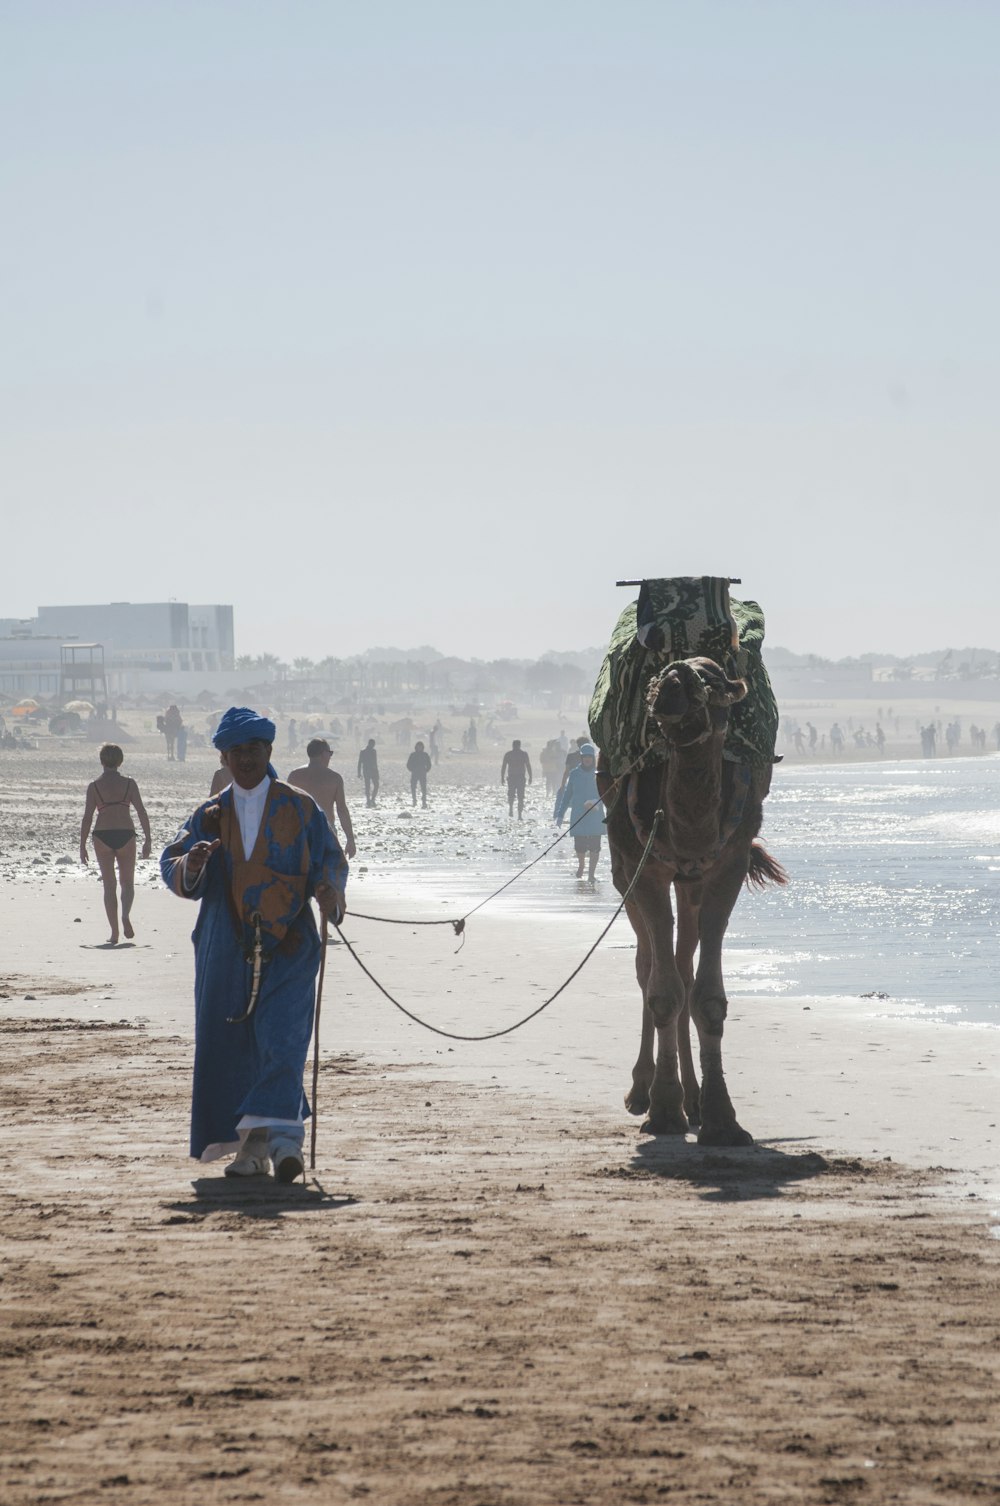 camelo e pessoas caminhando na praia durante o dia